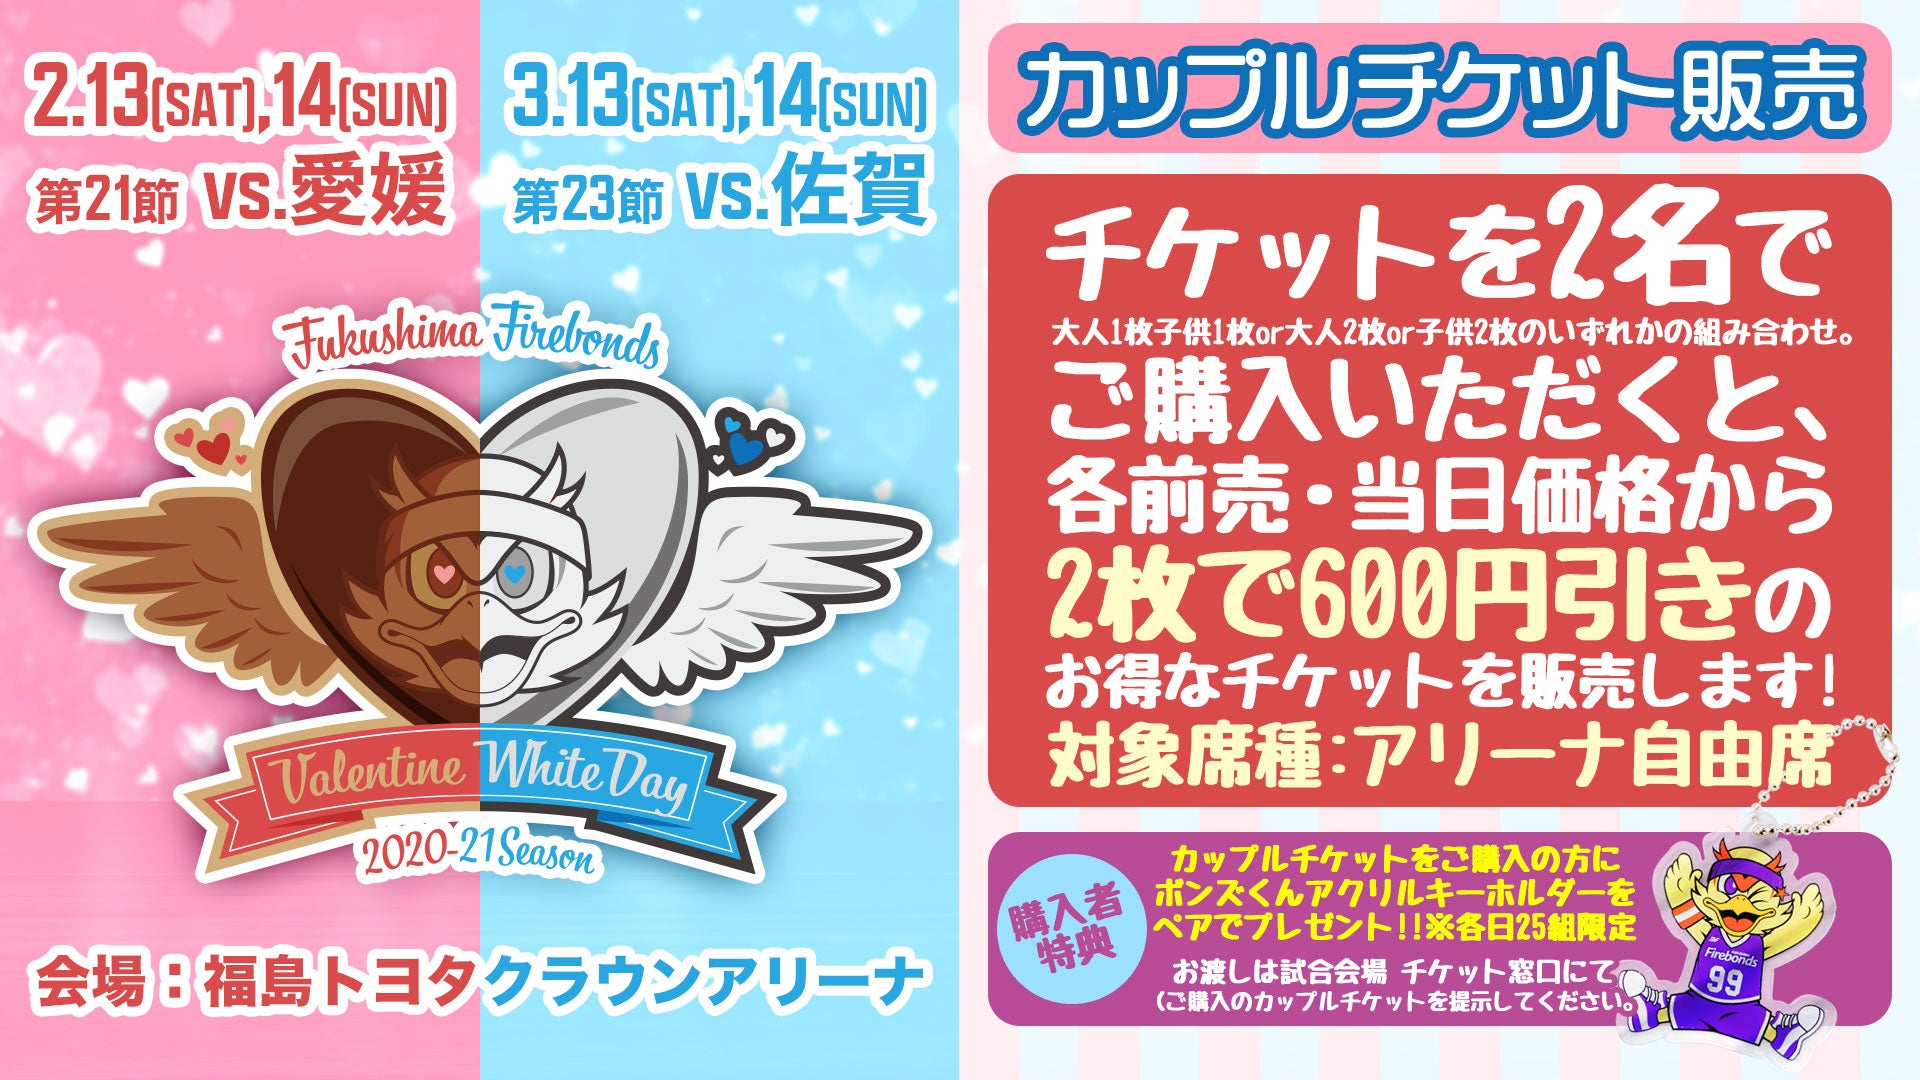 【チケット企画】2/13-14、3/13-14カップルチケット販売のお知らせ | 福島ファイヤーボンズ